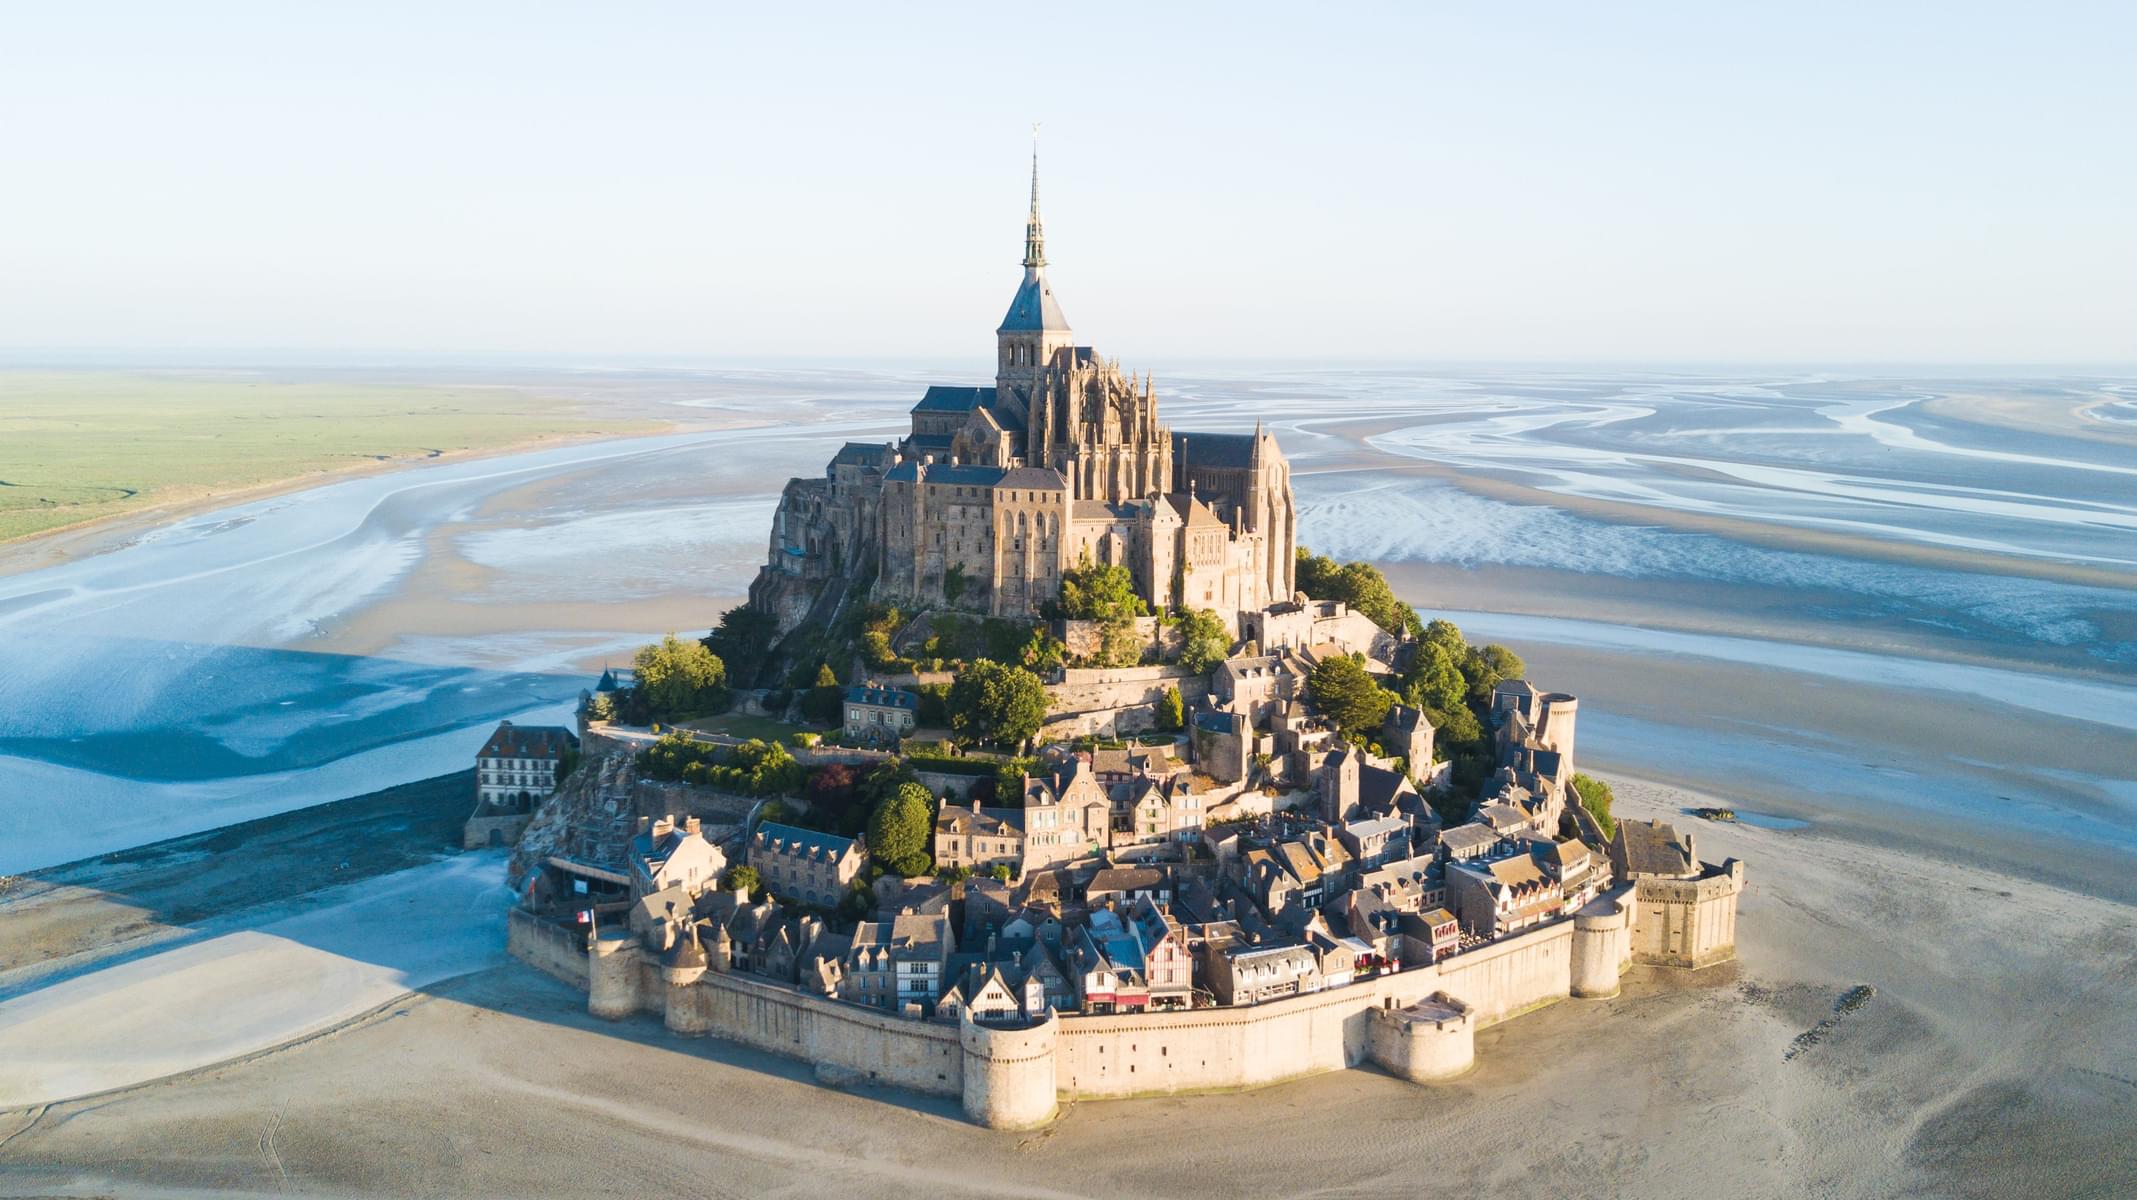 Architecture of Mont Saint Michel